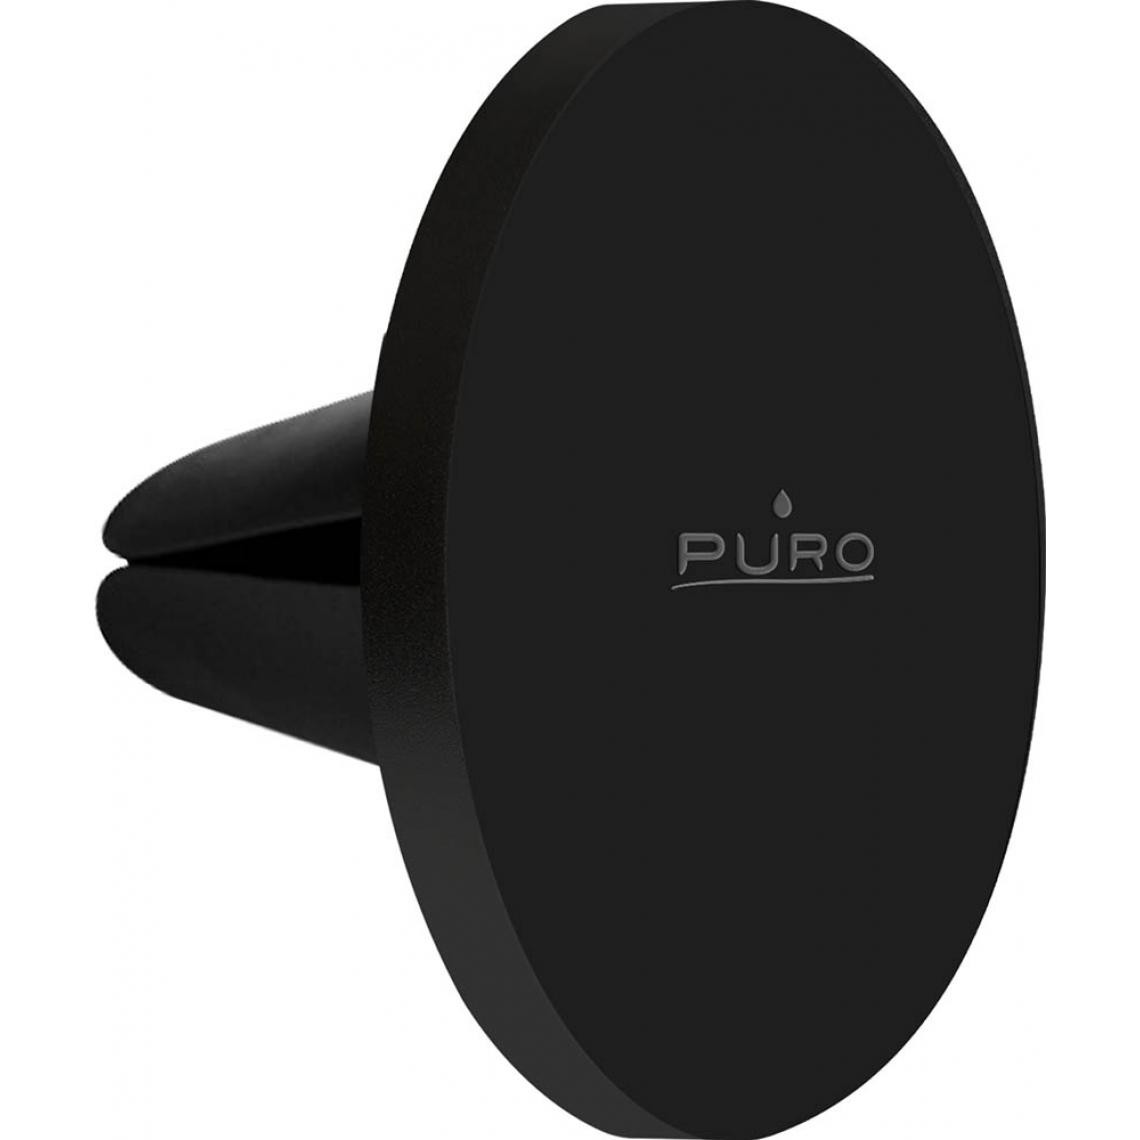 Puro - PURO PUROCARVENTMSBLK - Support voiture MagSafe magnet Noir - Support téléphone pour voiture